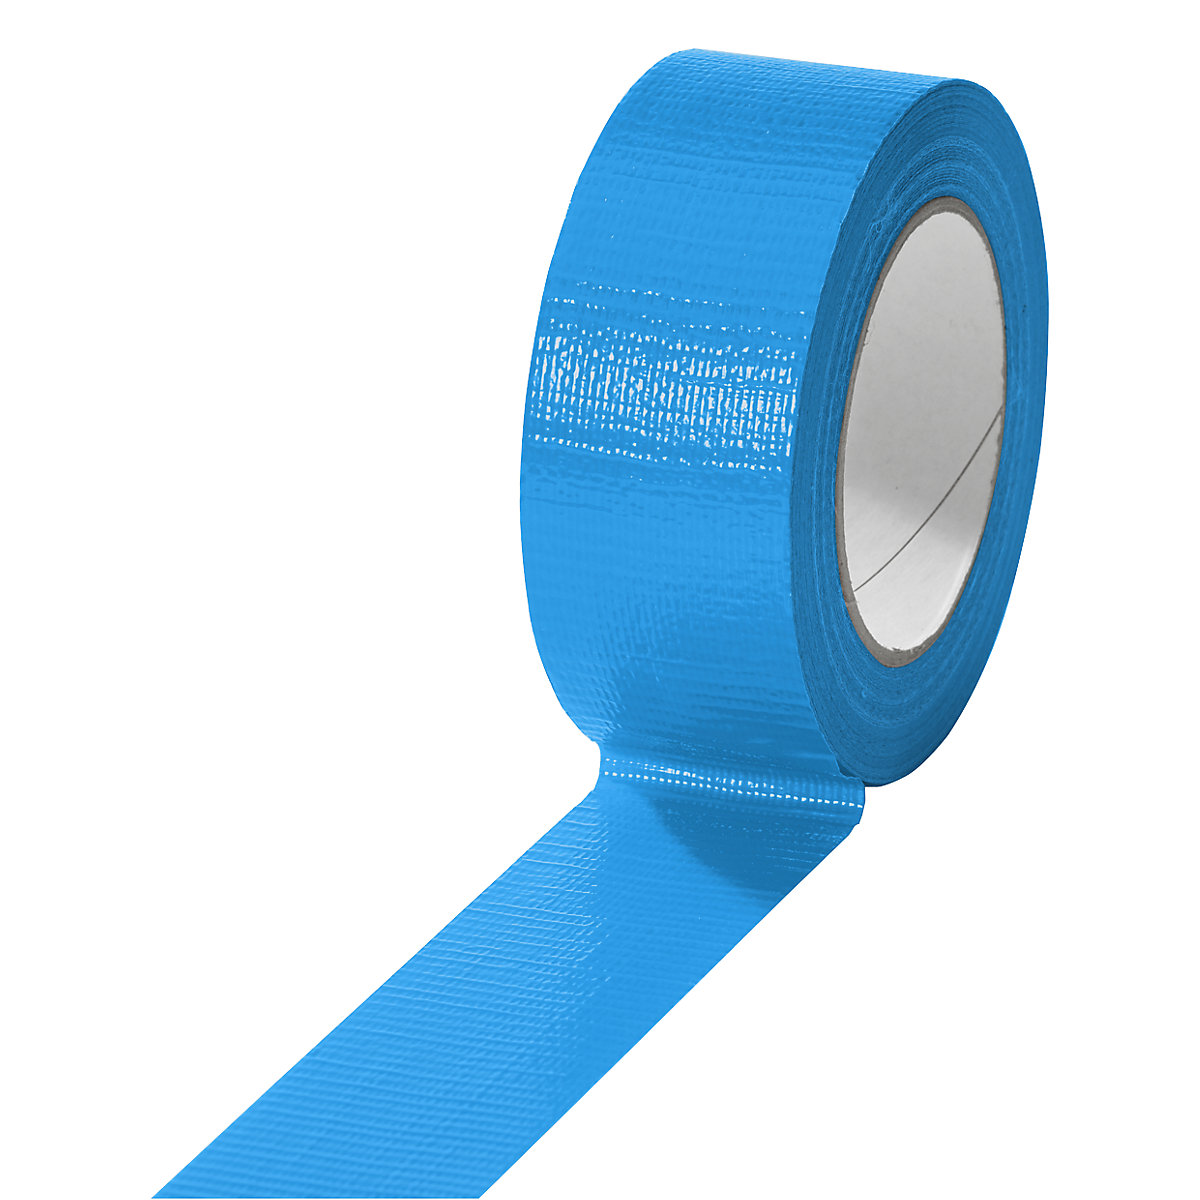 Gewebeband, in verschiedenen Farben, VE 24 Rollen, blau, Bandbreite 38 mm